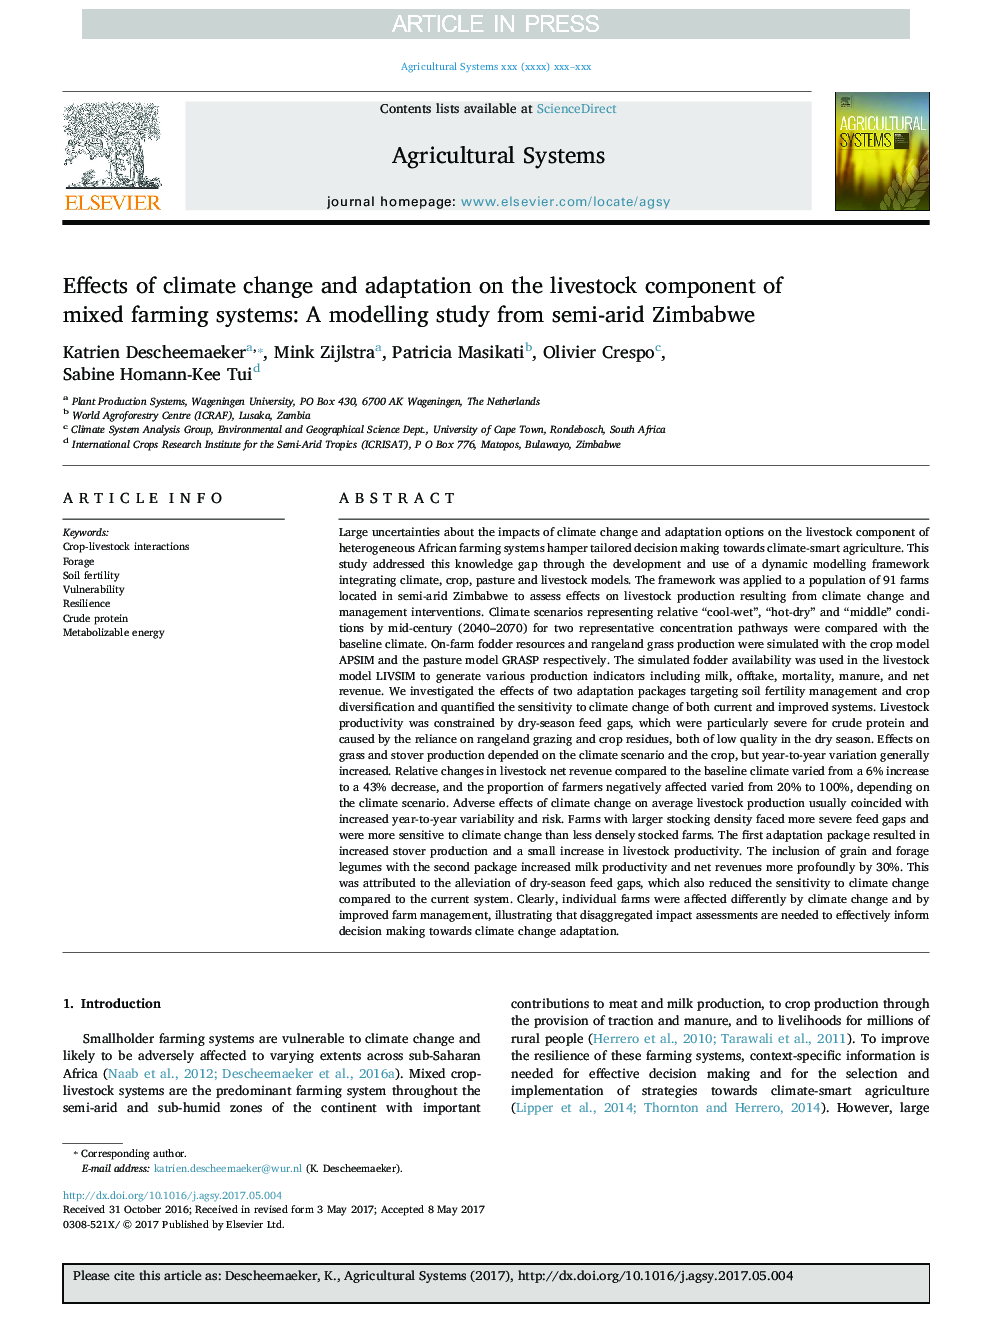 اثرات تغییرات آب و هوایی و سازگاری با مولفه های دام در سیستم های کشاورزی مختلط: یک مطالعه مدلسازی از نیمه خشک 